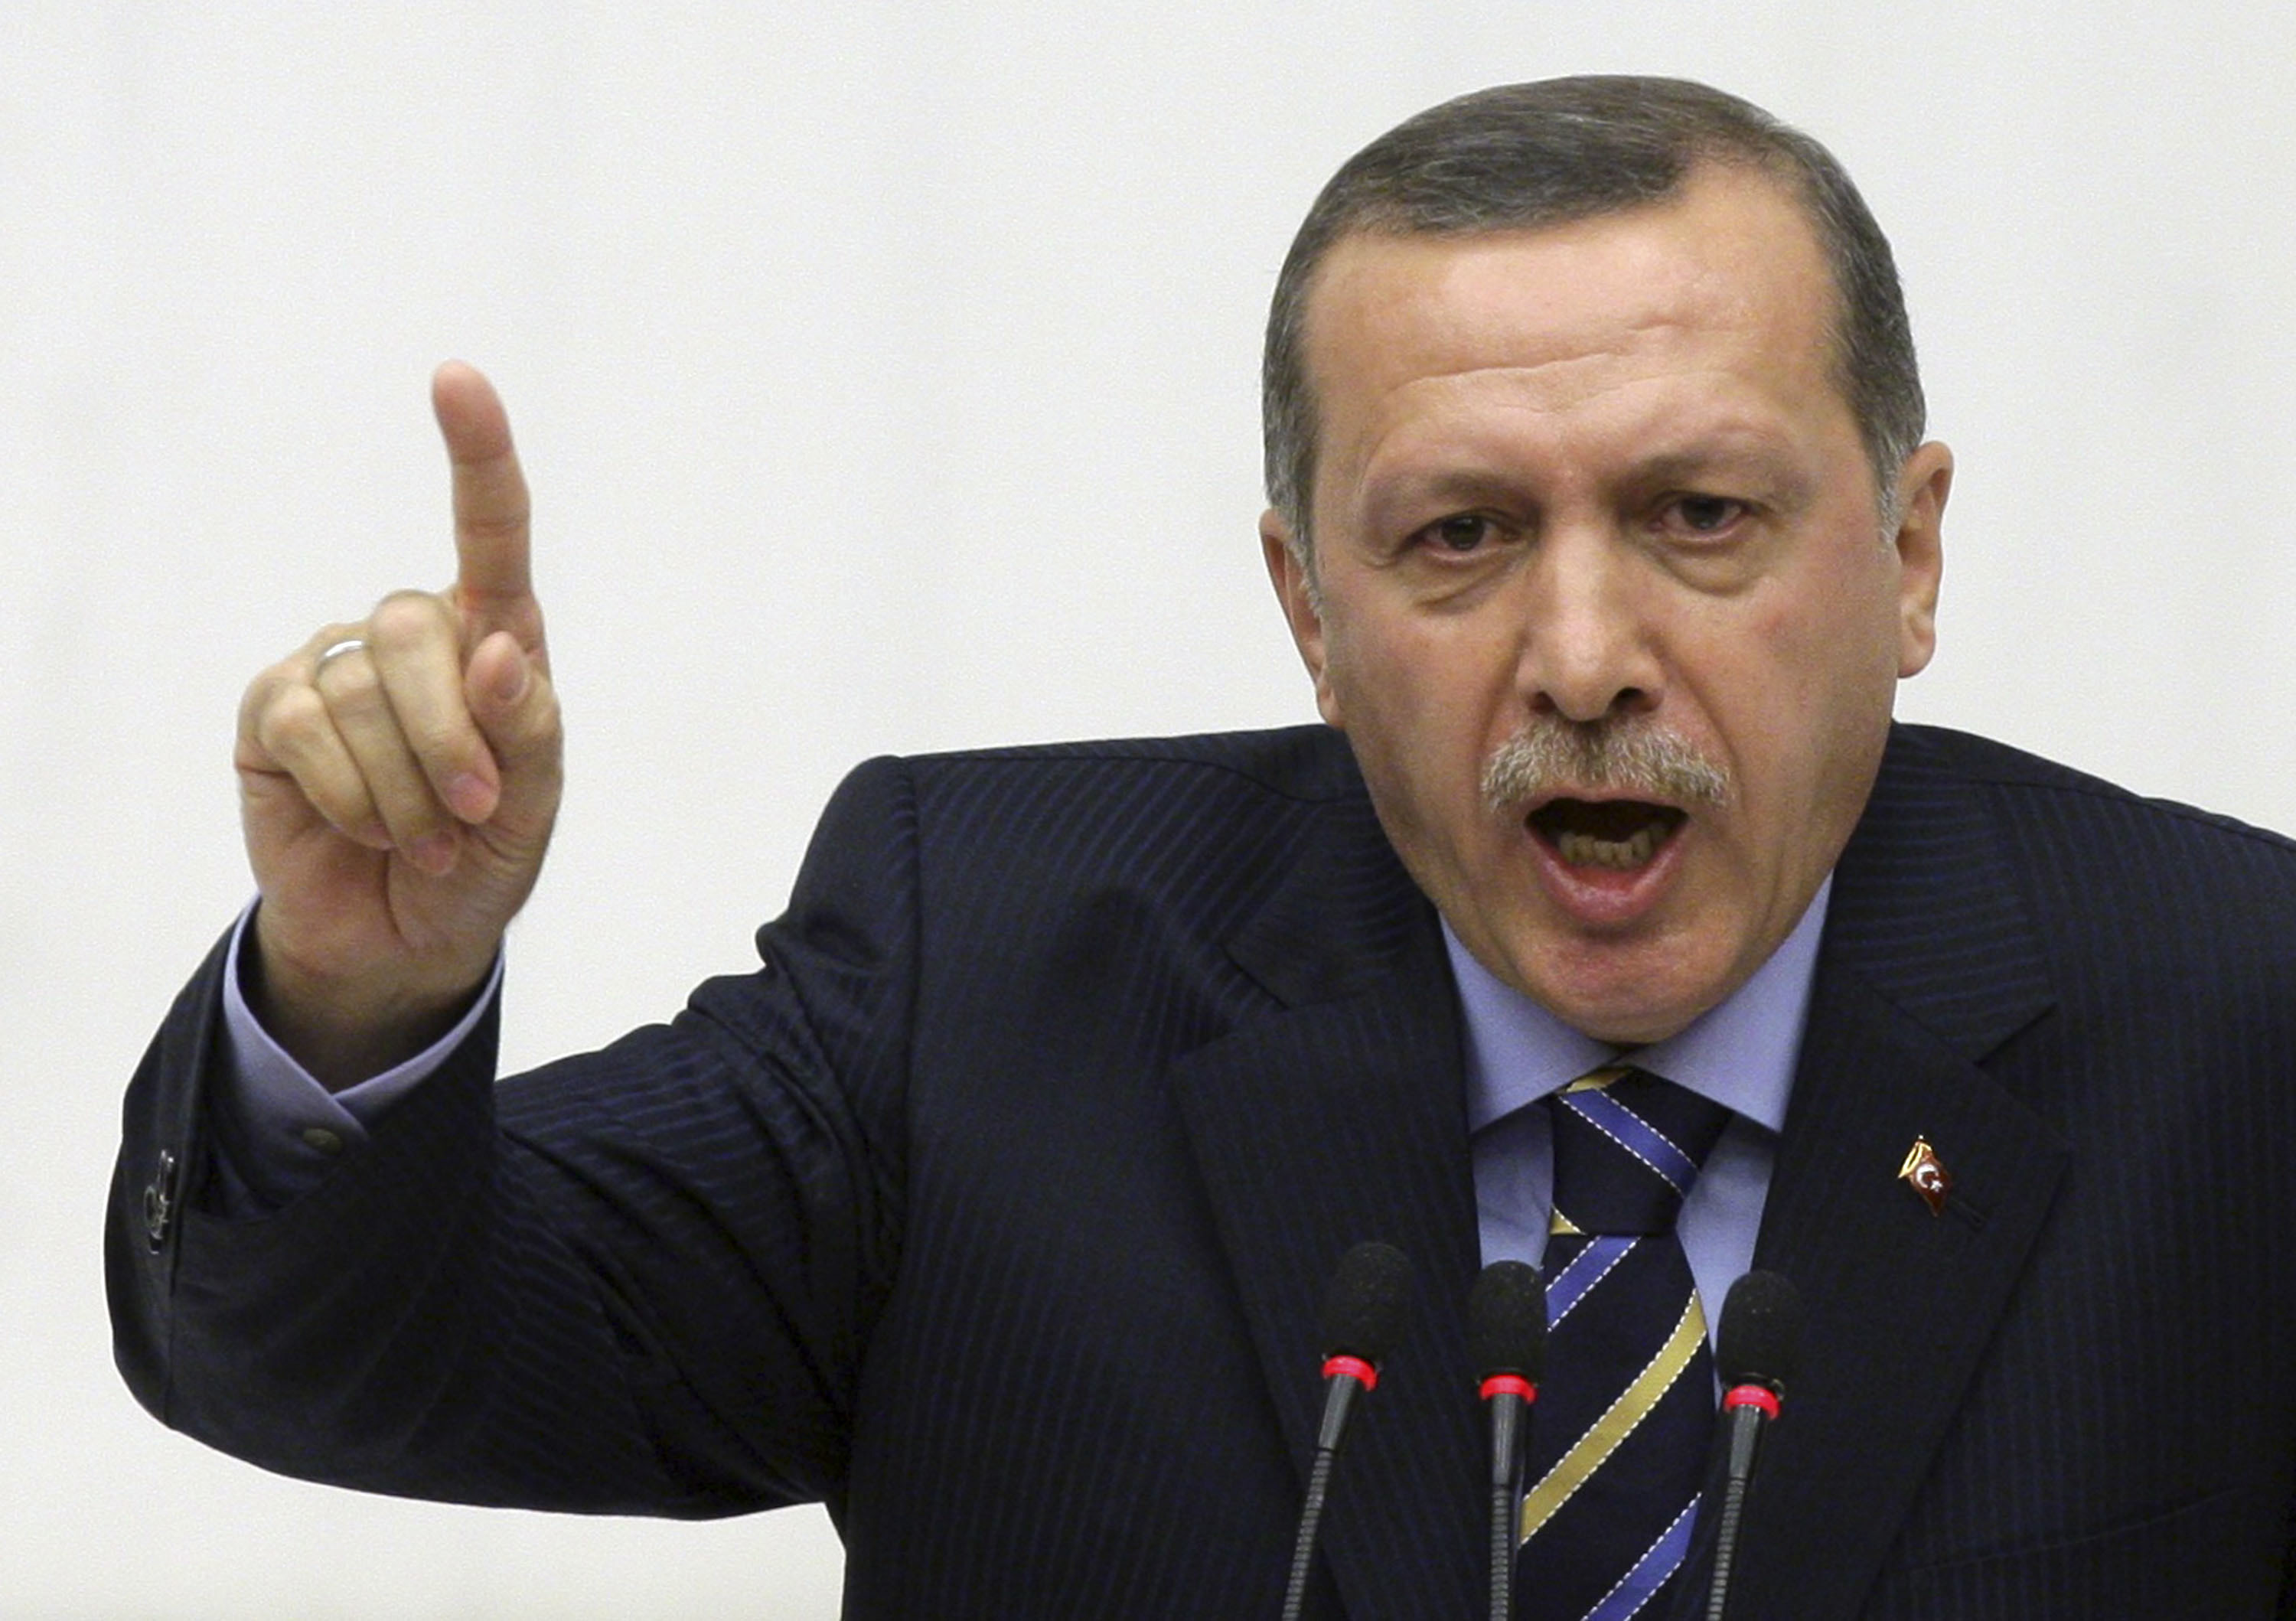 Ερντογάν: “Εάν τα παιδιά μου εμπλέκονταν σε σκάνδαλο θα τα διέγραφα”